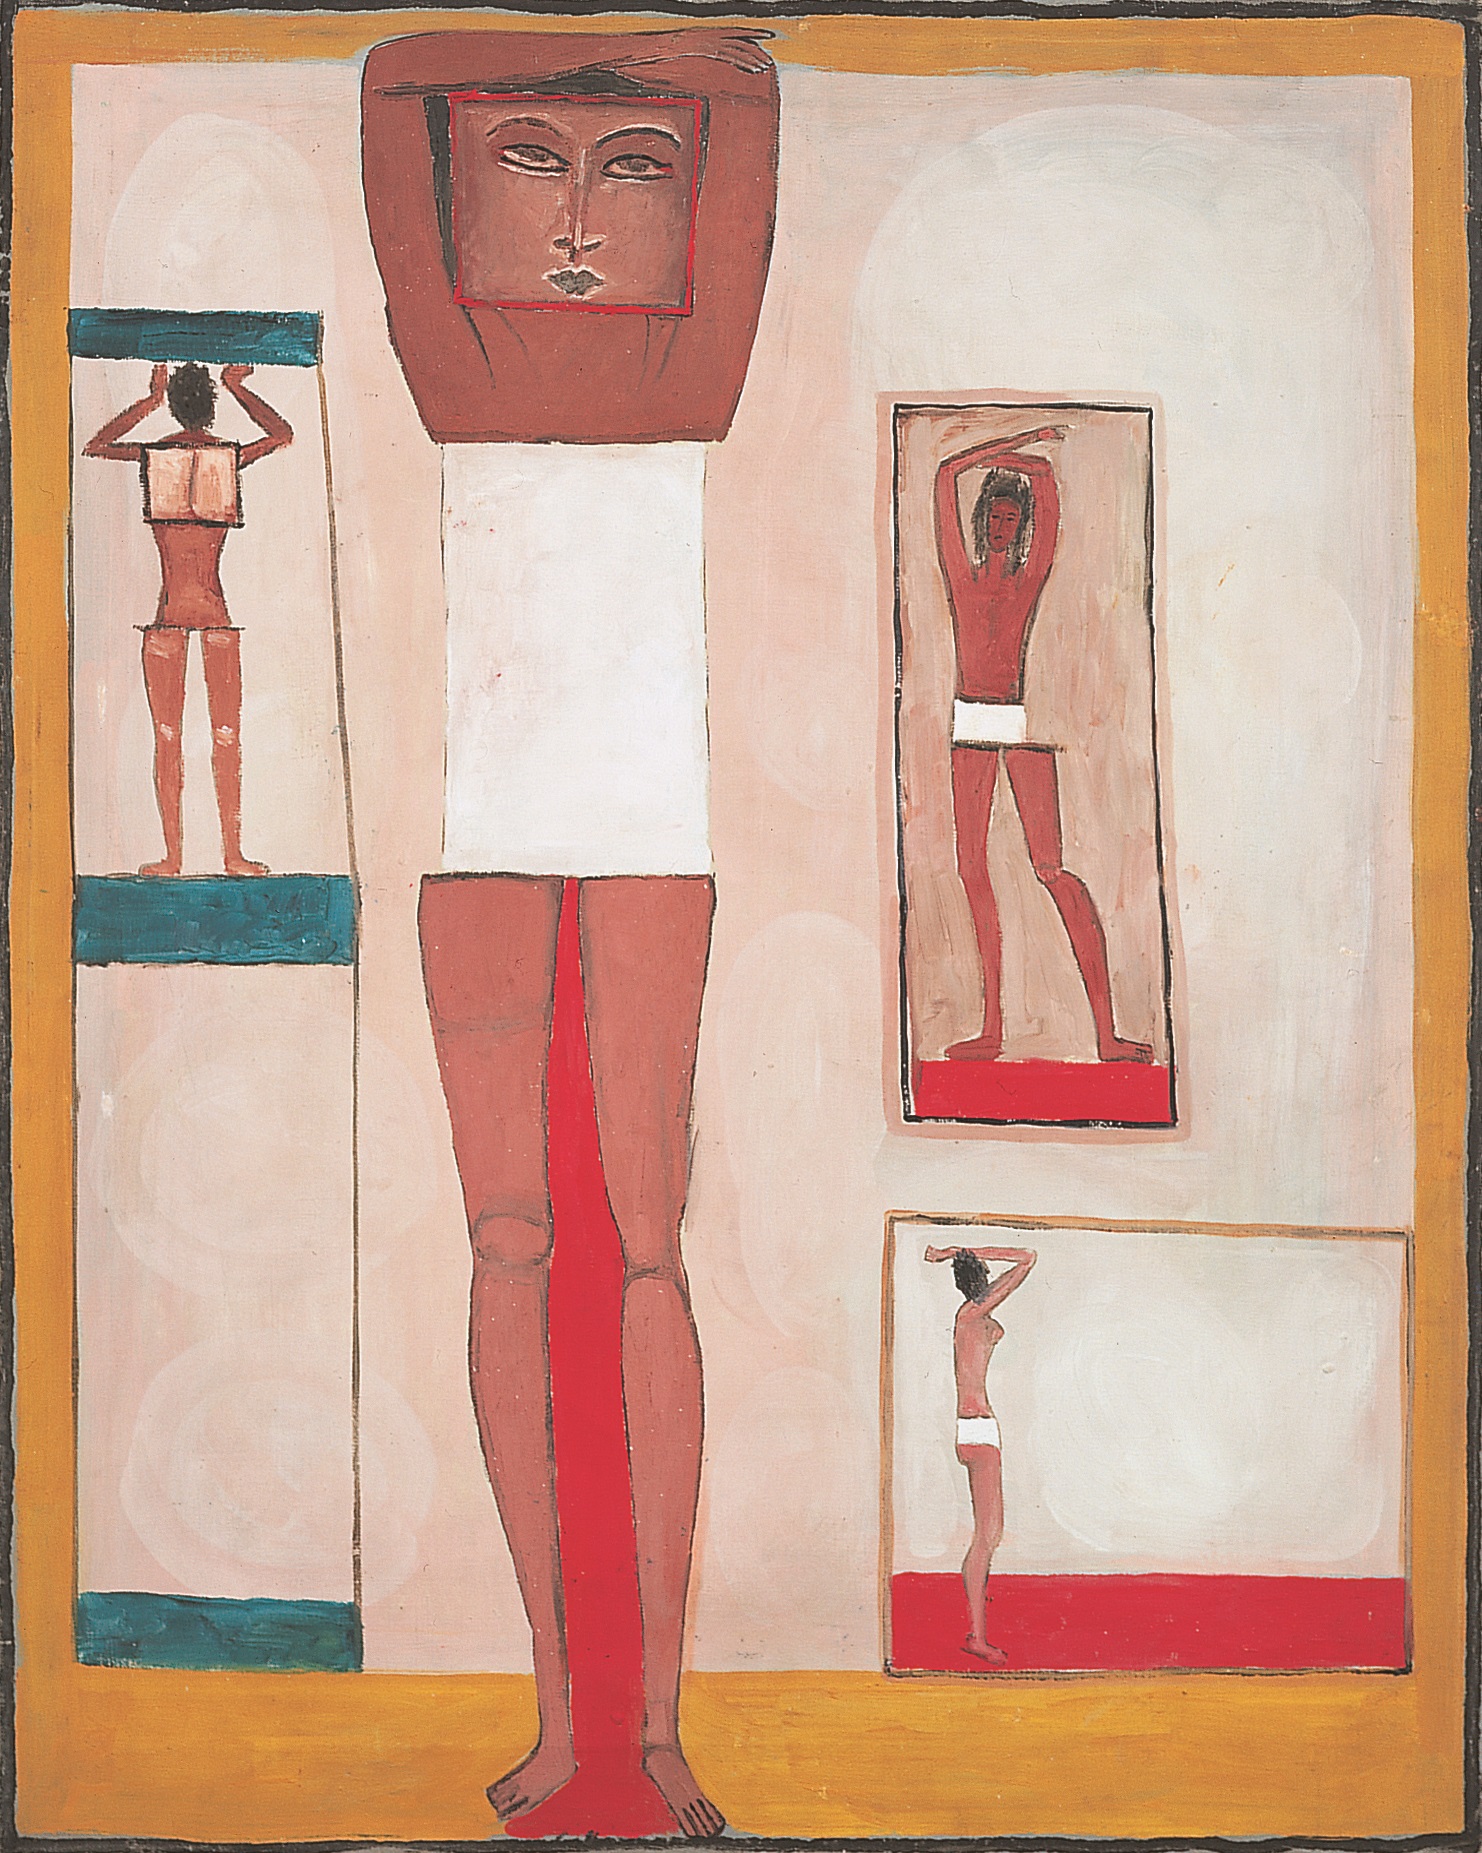 Jerzy Nowosielski, Kobieta egipska, 1958, 81 x 65 cm, olej/płótno, Fundacja Nowosielskich